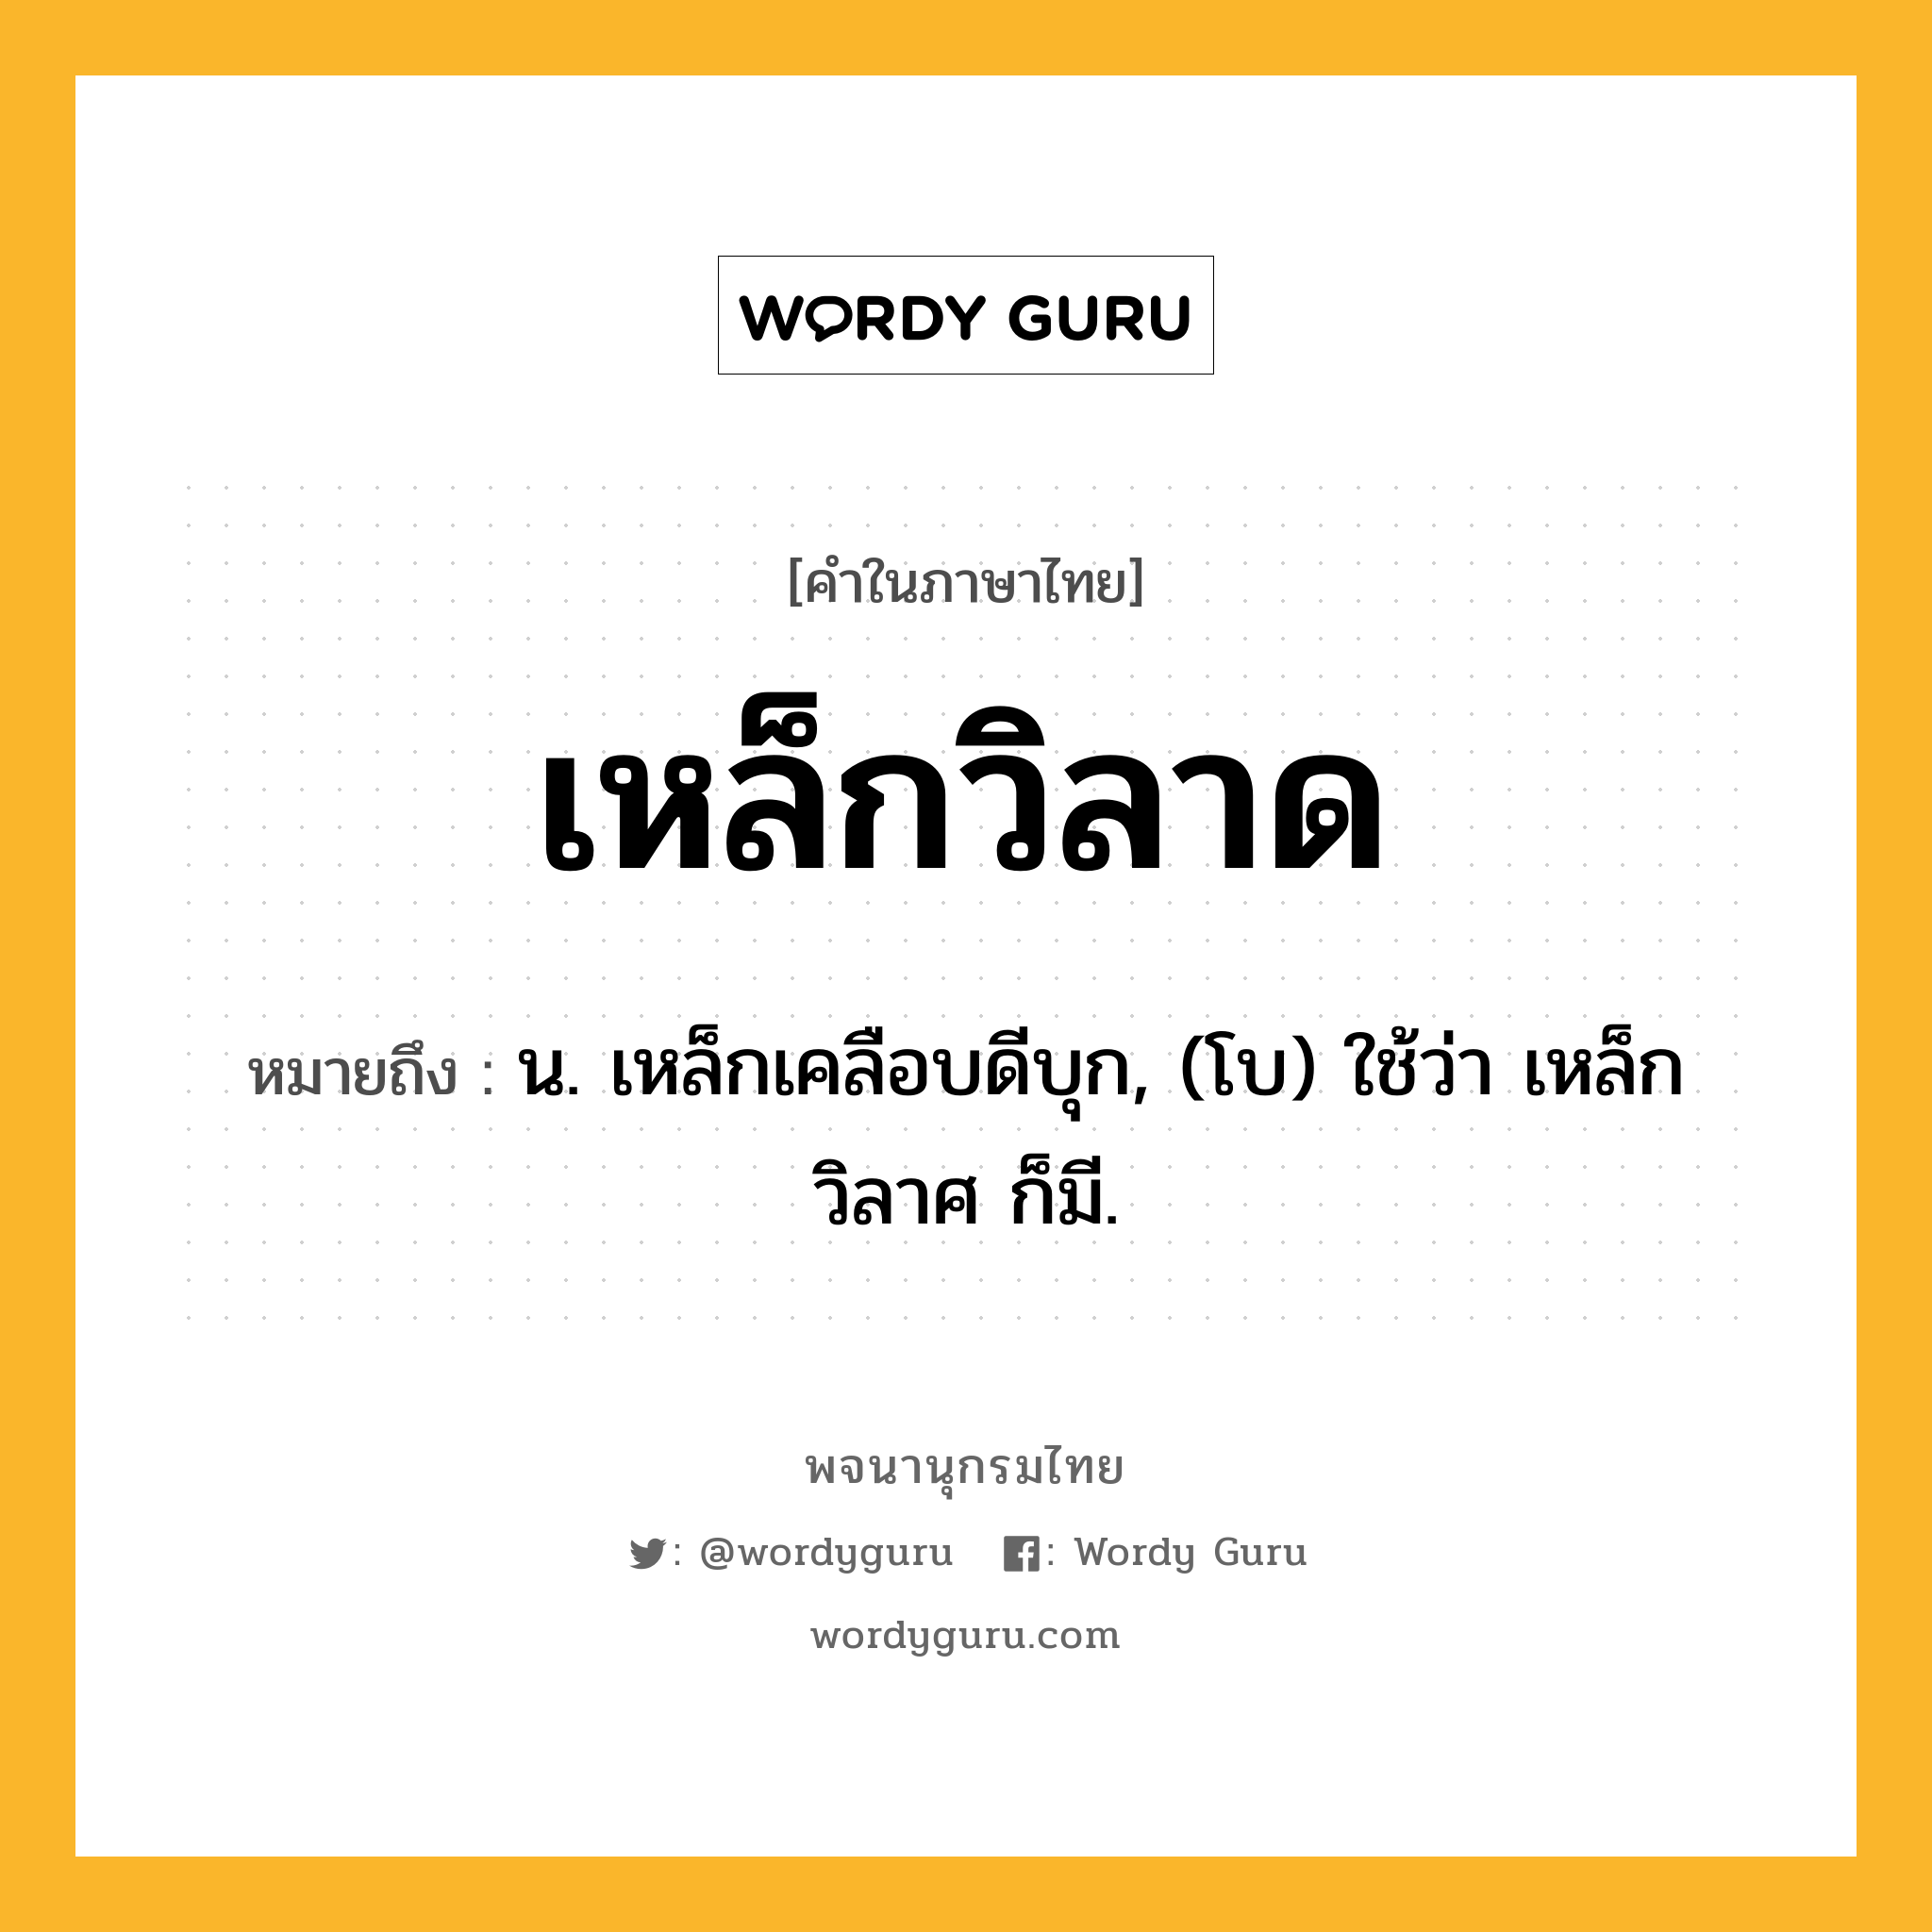 เหล็กวิลาด ความหมาย หมายถึงอะไร?, คำในภาษาไทย เหล็กวิลาด หมายถึง น. เหล็กเคลือบดีบุก, (โบ) ใช้ว่า เหล็กวิลาศ ก็มี.